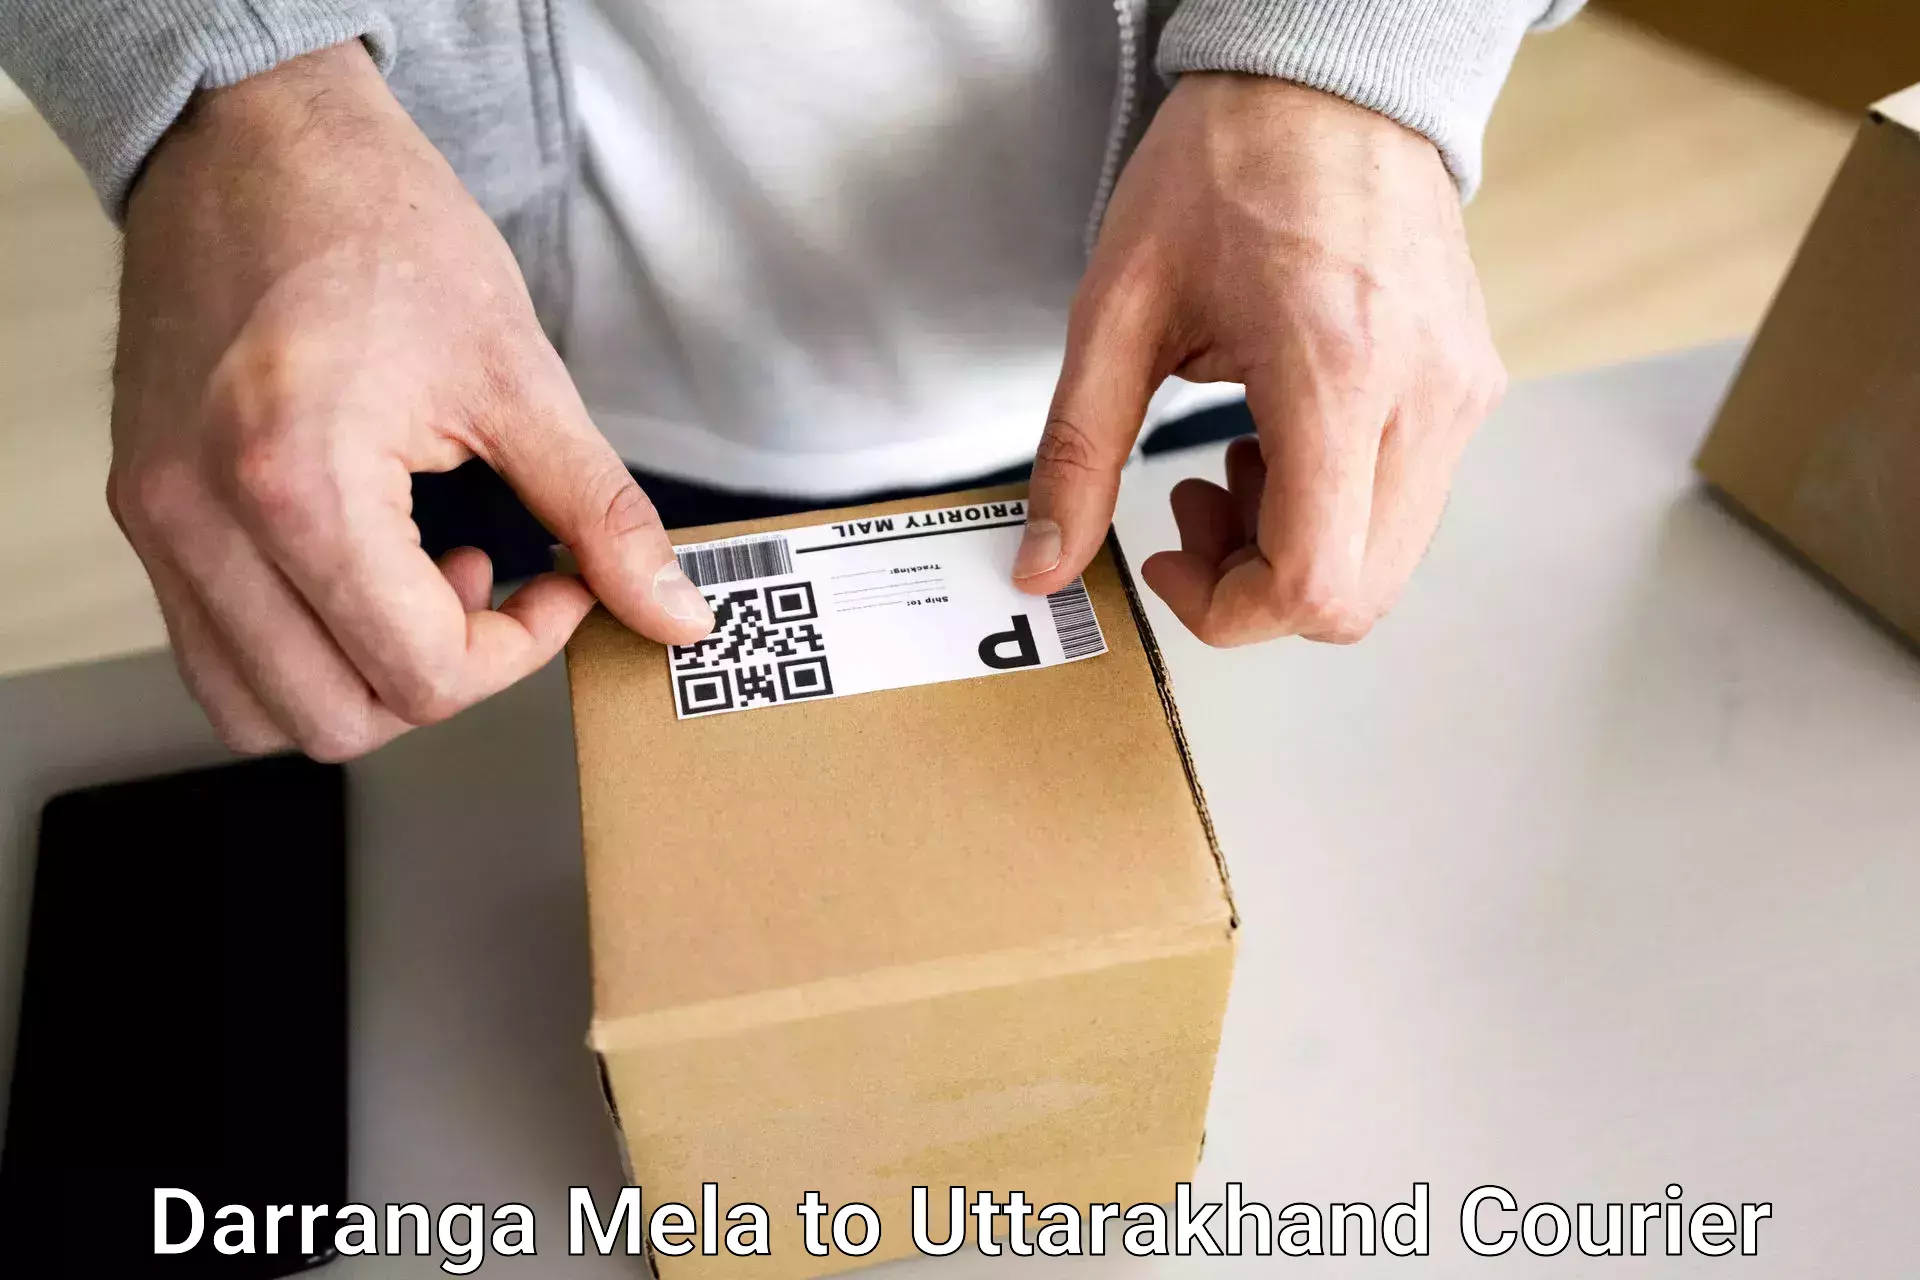 Luggage transport solutions Darranga Mela to Uttarakhand